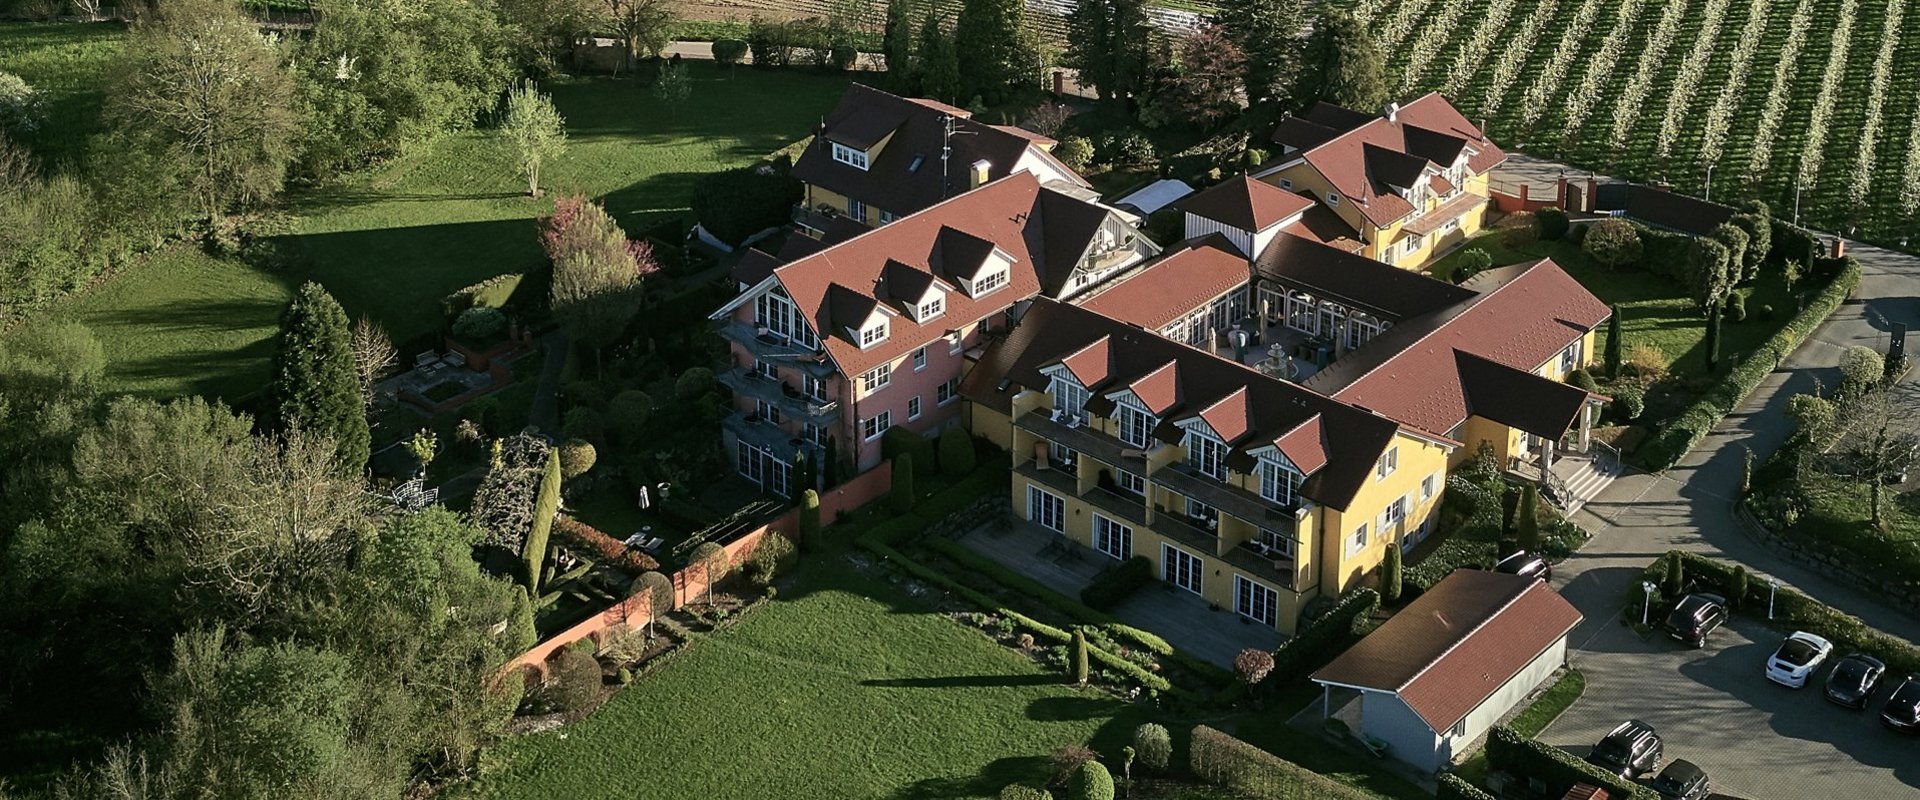 Luftbild auf die Dächer des Hotel Villino in Lindau am Bodensee, gedämmt mit puren